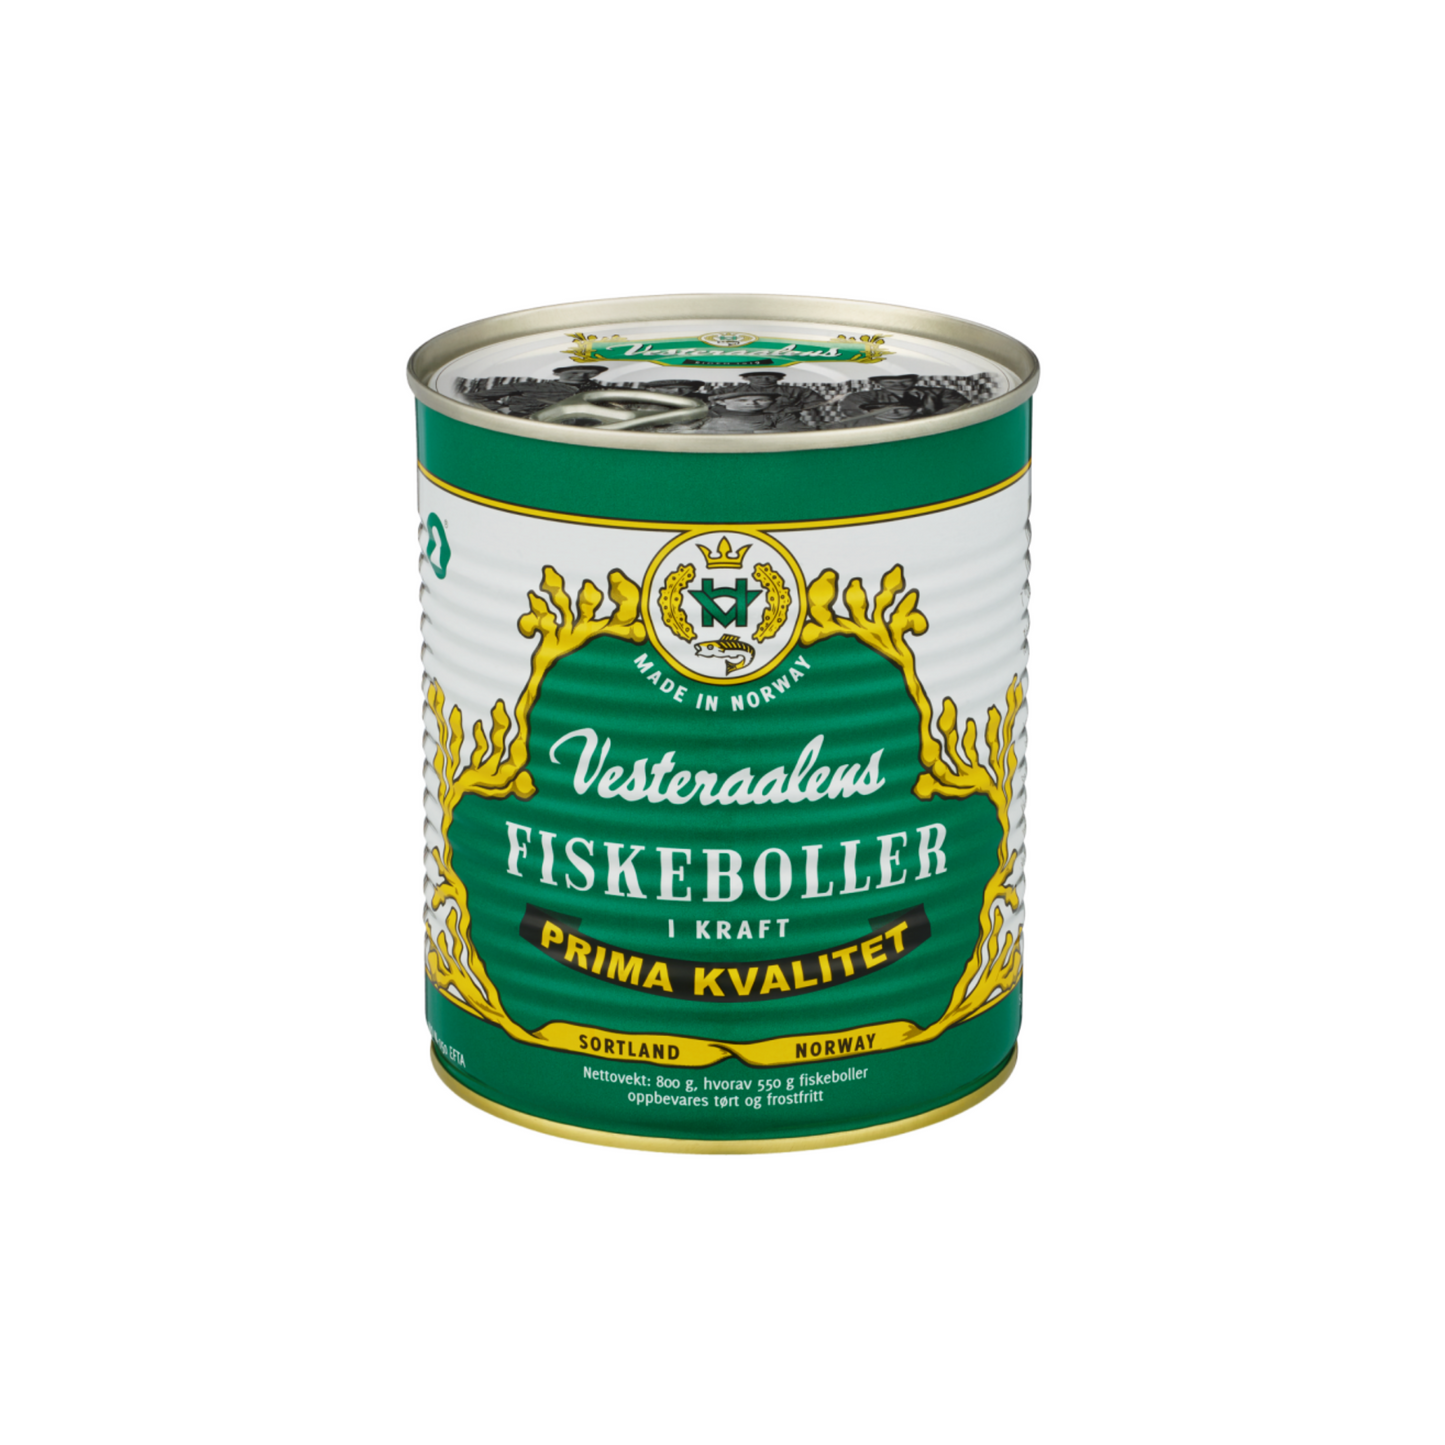 Vesteraalens Fiskeboller - Norwegian Fish Balls 550g (1.21 lbs)